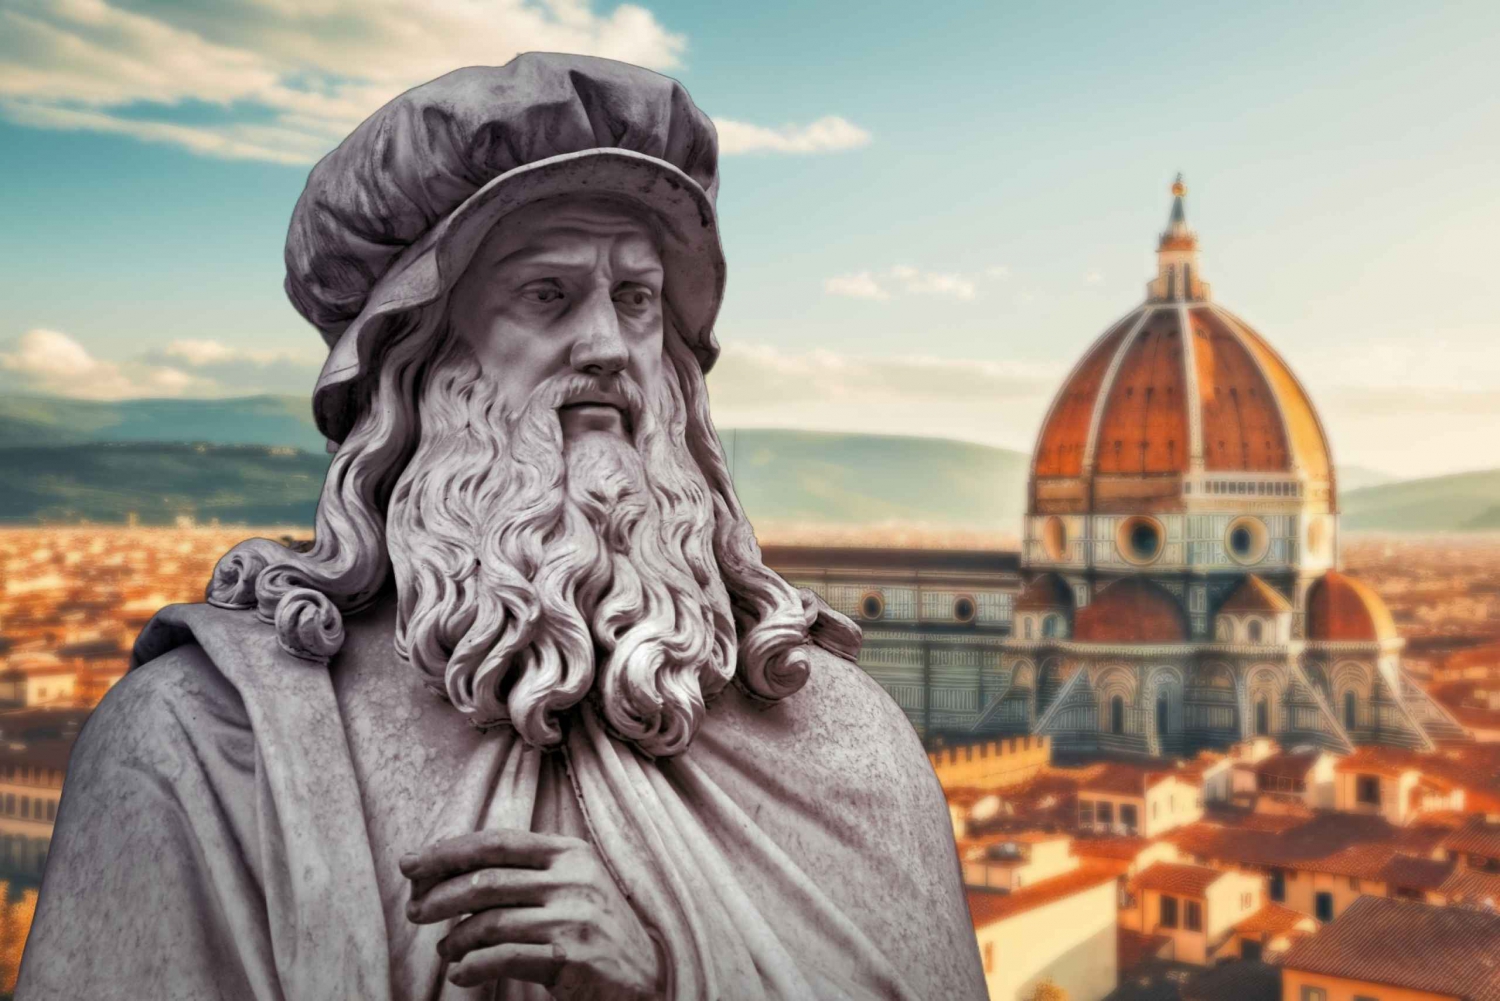 Léonard de Vinci à Florence, visite à pied de la Renaissance